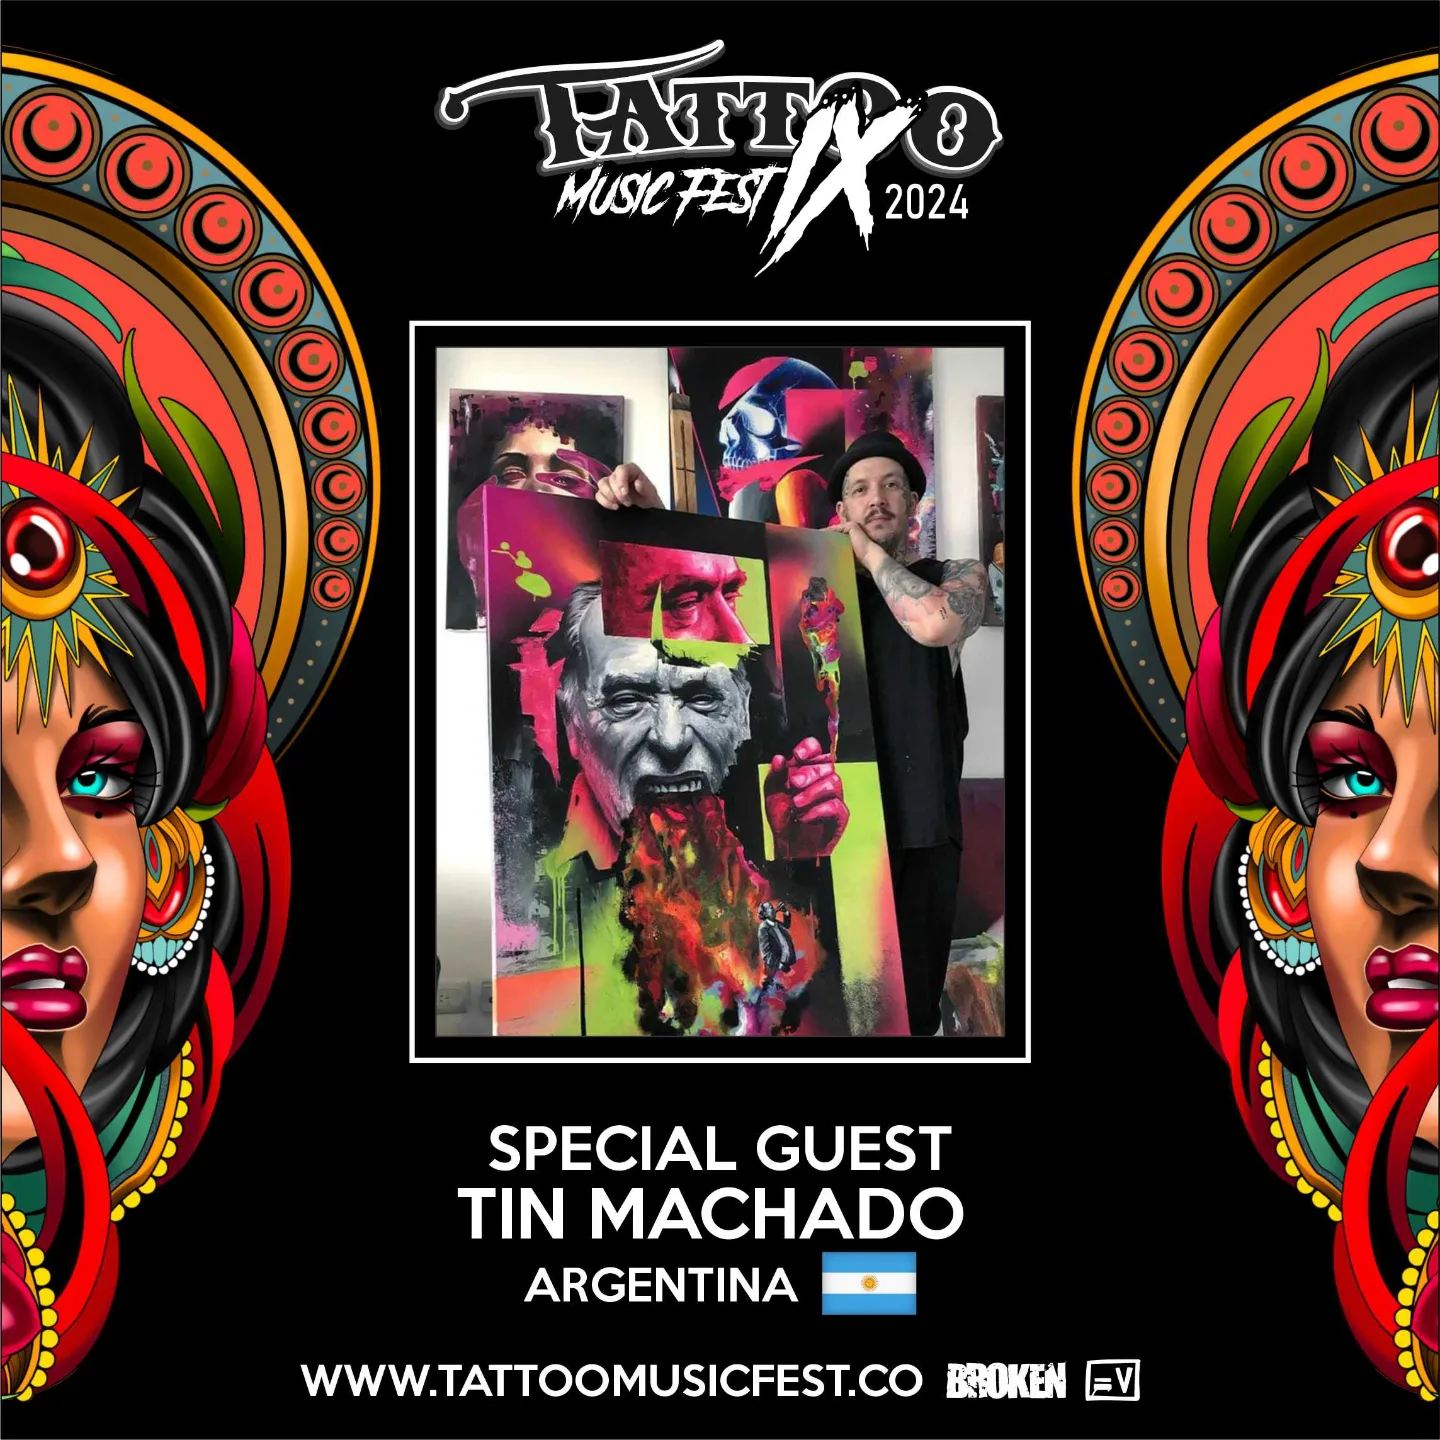 tin-machado-special-guest-tattoomusicfest2024